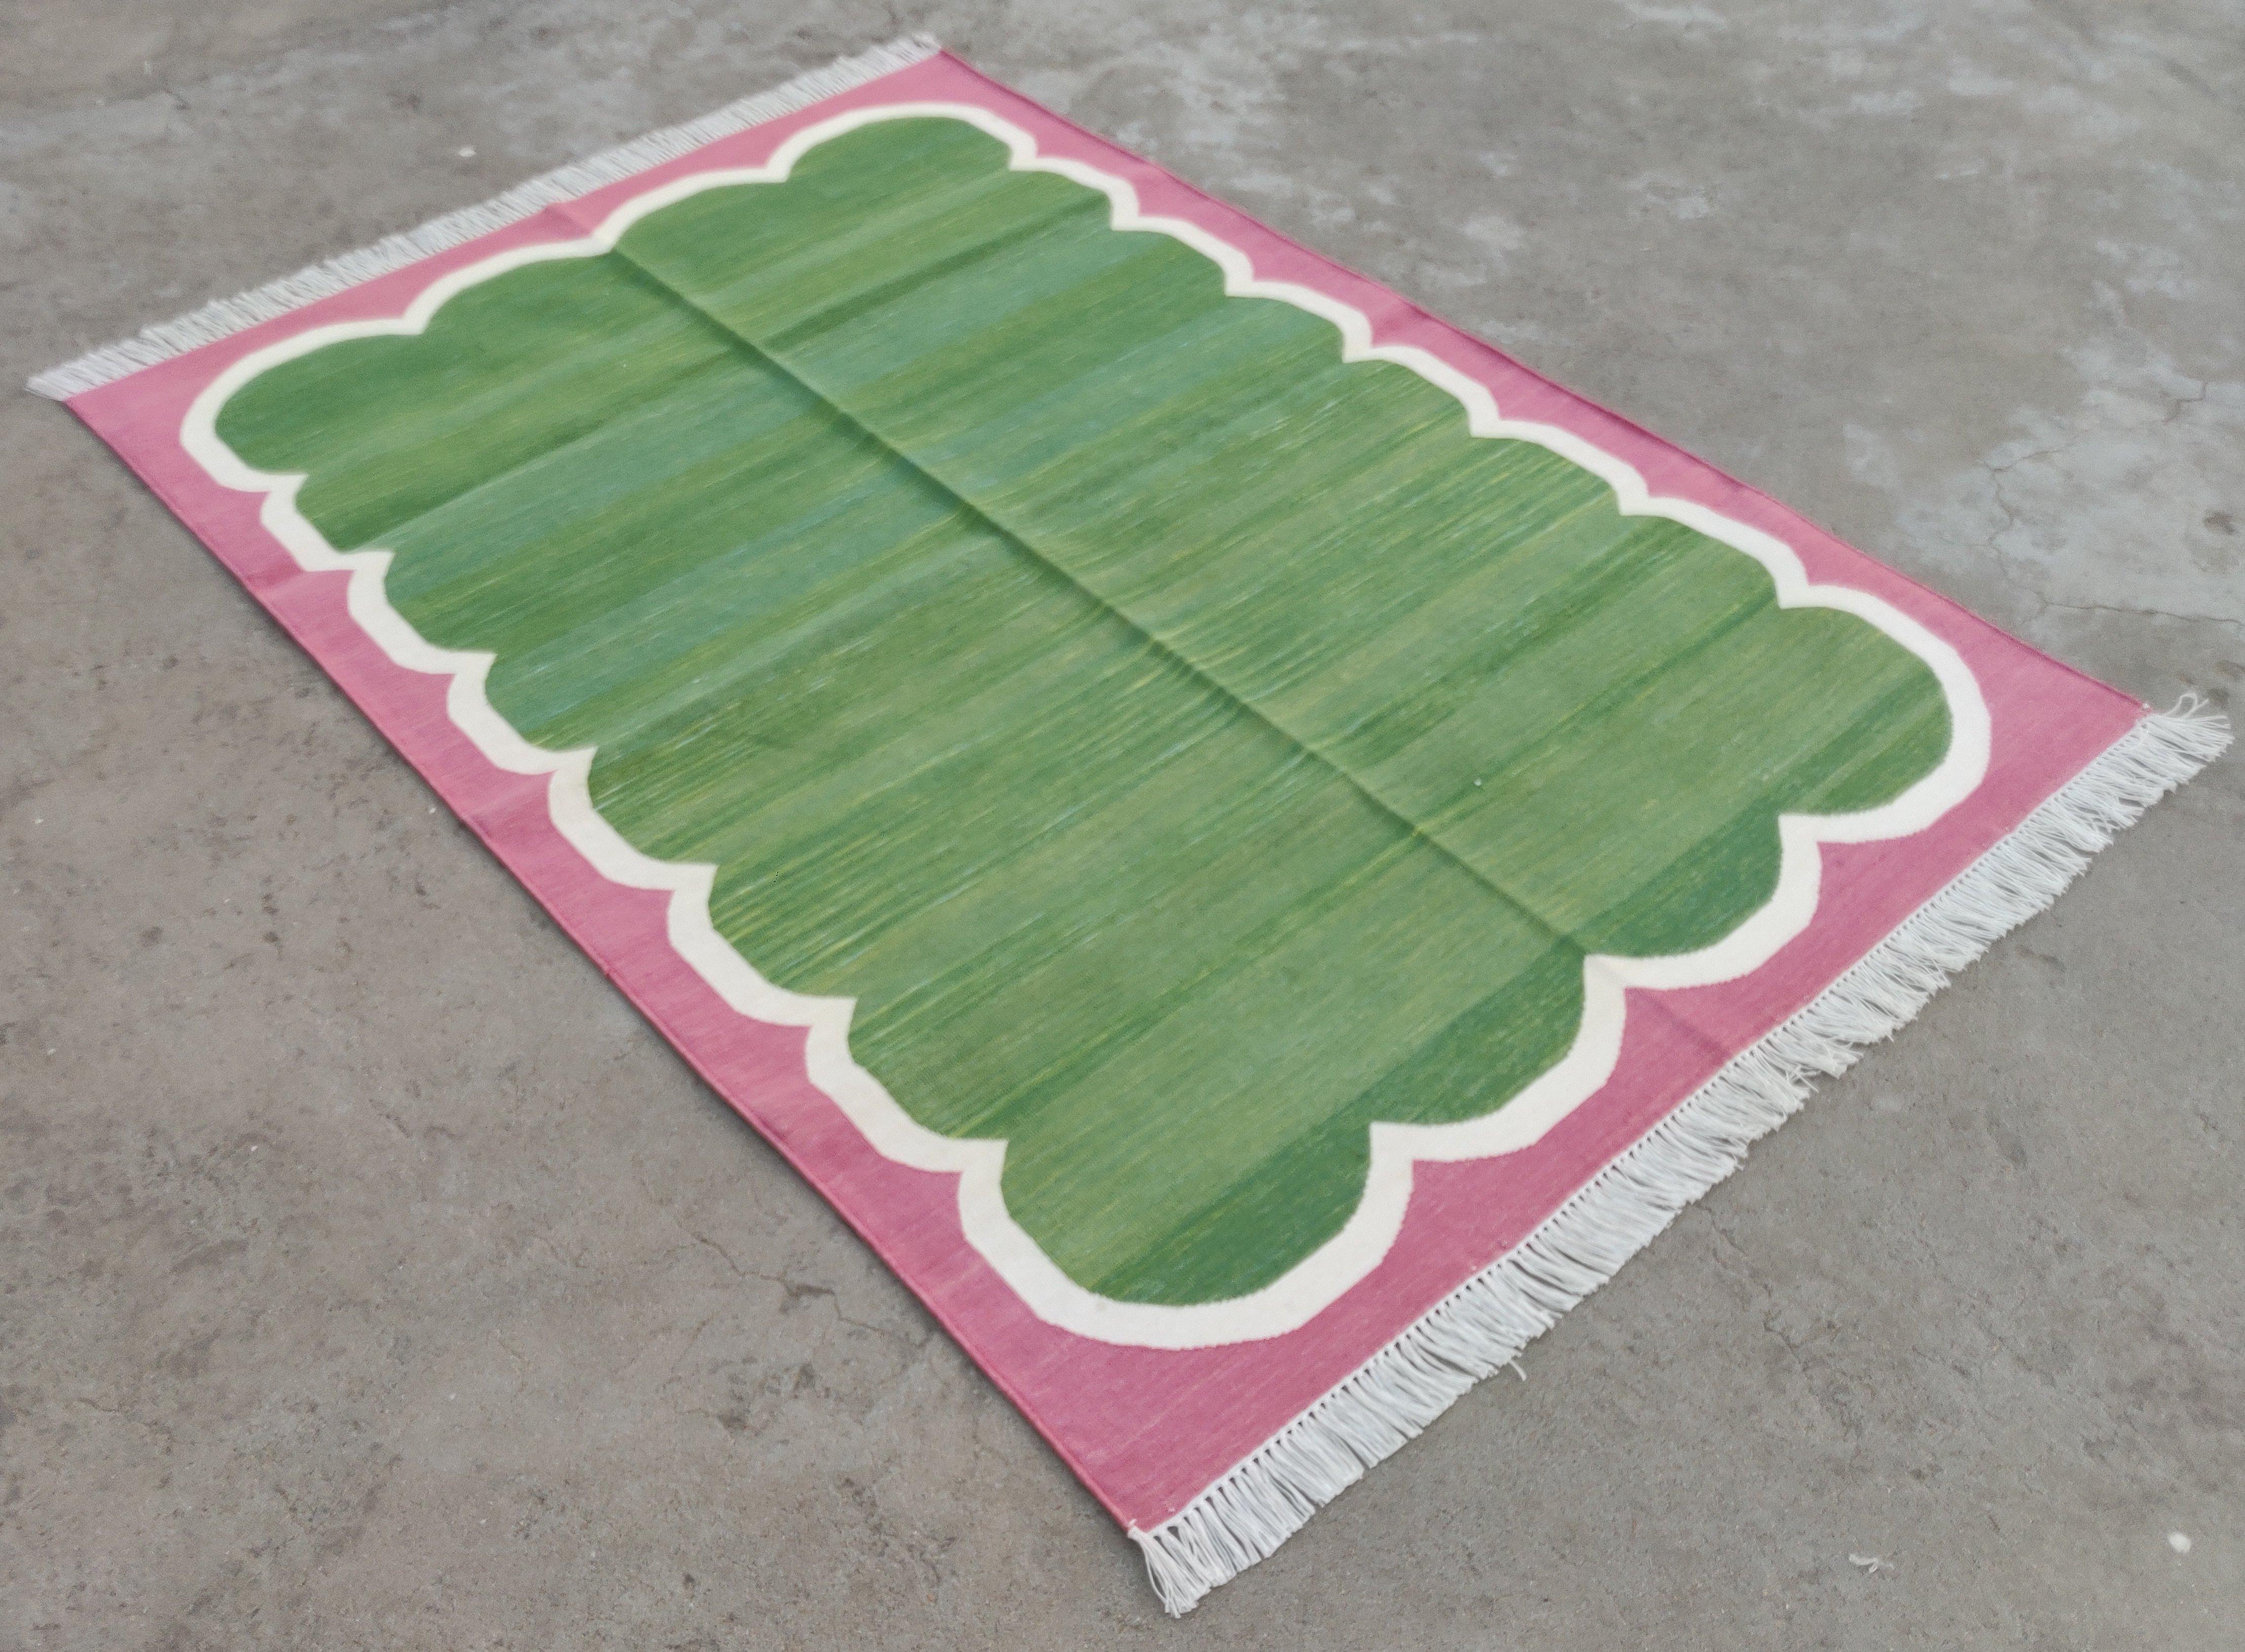 Baumwolle natürlich pflanzlich gefärbt, Waldgrün, Creme und Himbeerrosa mit Wellenschliff gestreiften indischen Teppich - 5'x7'
Diese speziellen flachgewebten Dhurries werden aus 15-fachem Garn aus 100% Baumwolle handgewebt. Aufgrund der speziellen